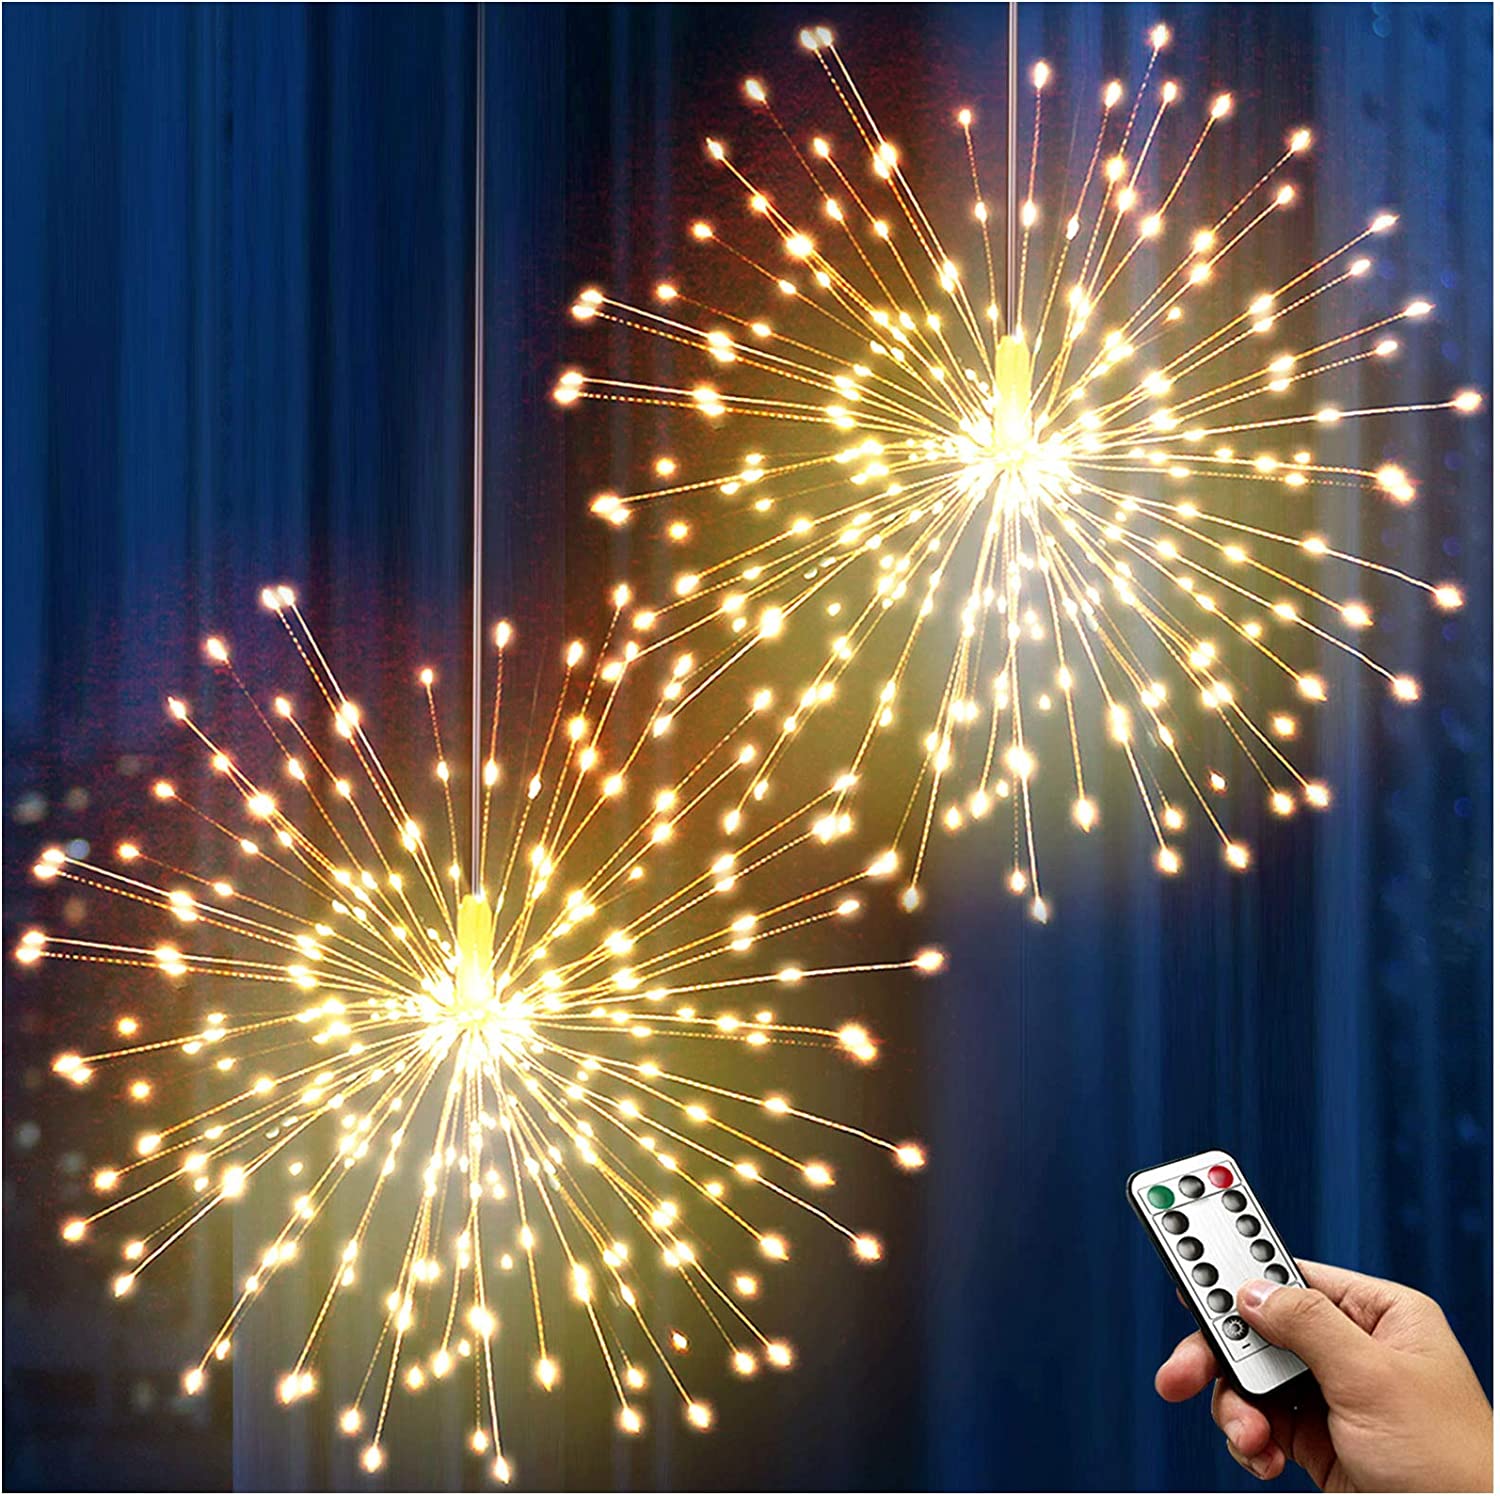 – Feuerwerk dekorative 3D Euroelectronics Licht hängend DE Starburst LED hängende LED Stern